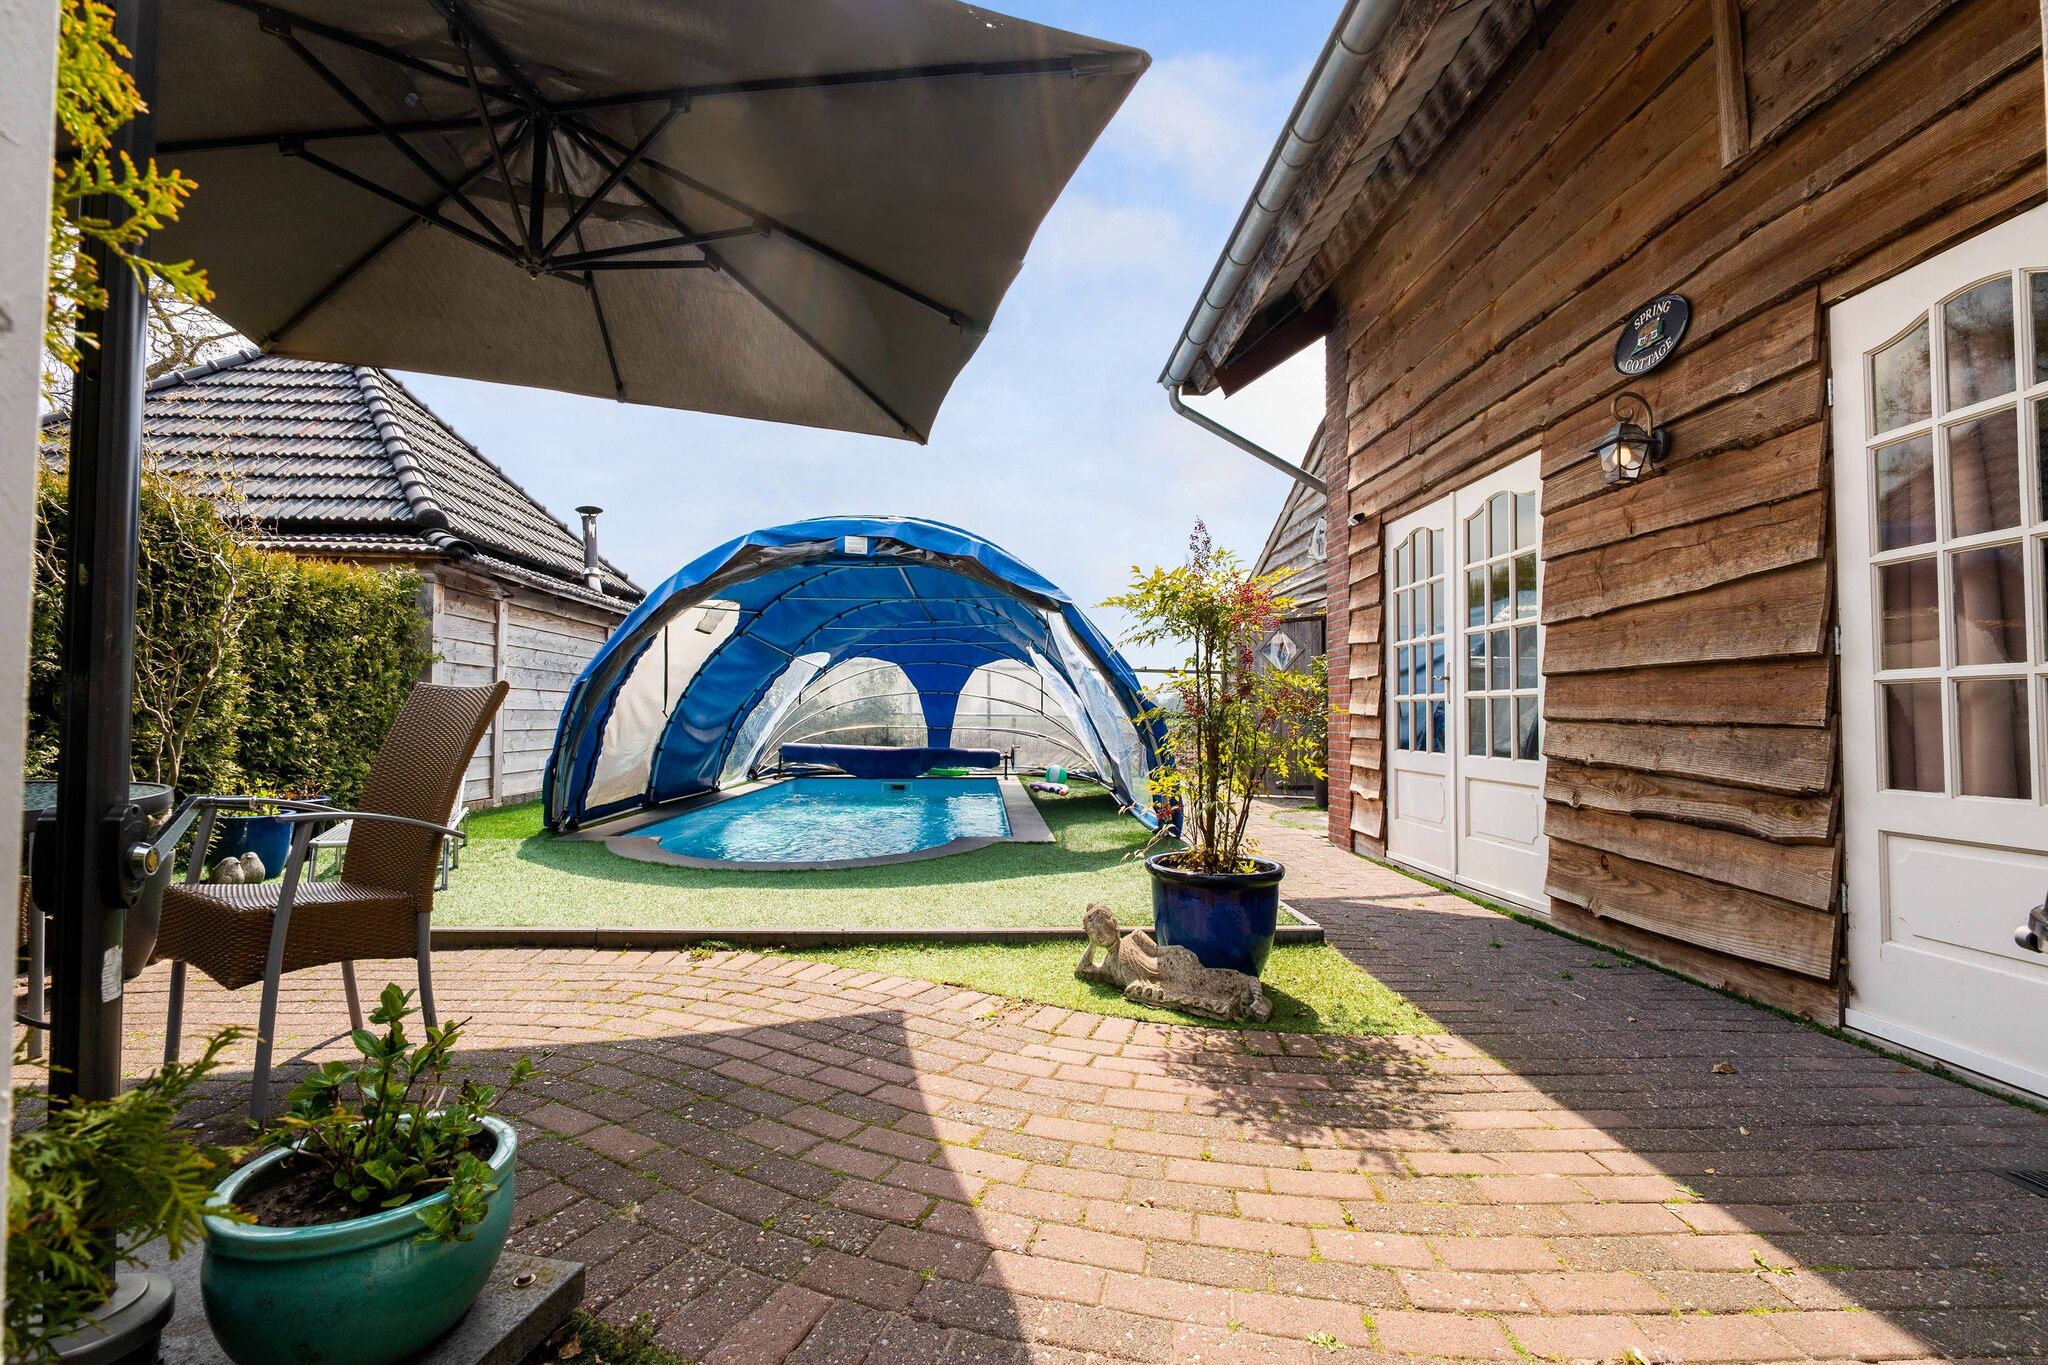 Celebration Wellness Huis, vakantiehuis in Balkbrug met een sauna en zwembad